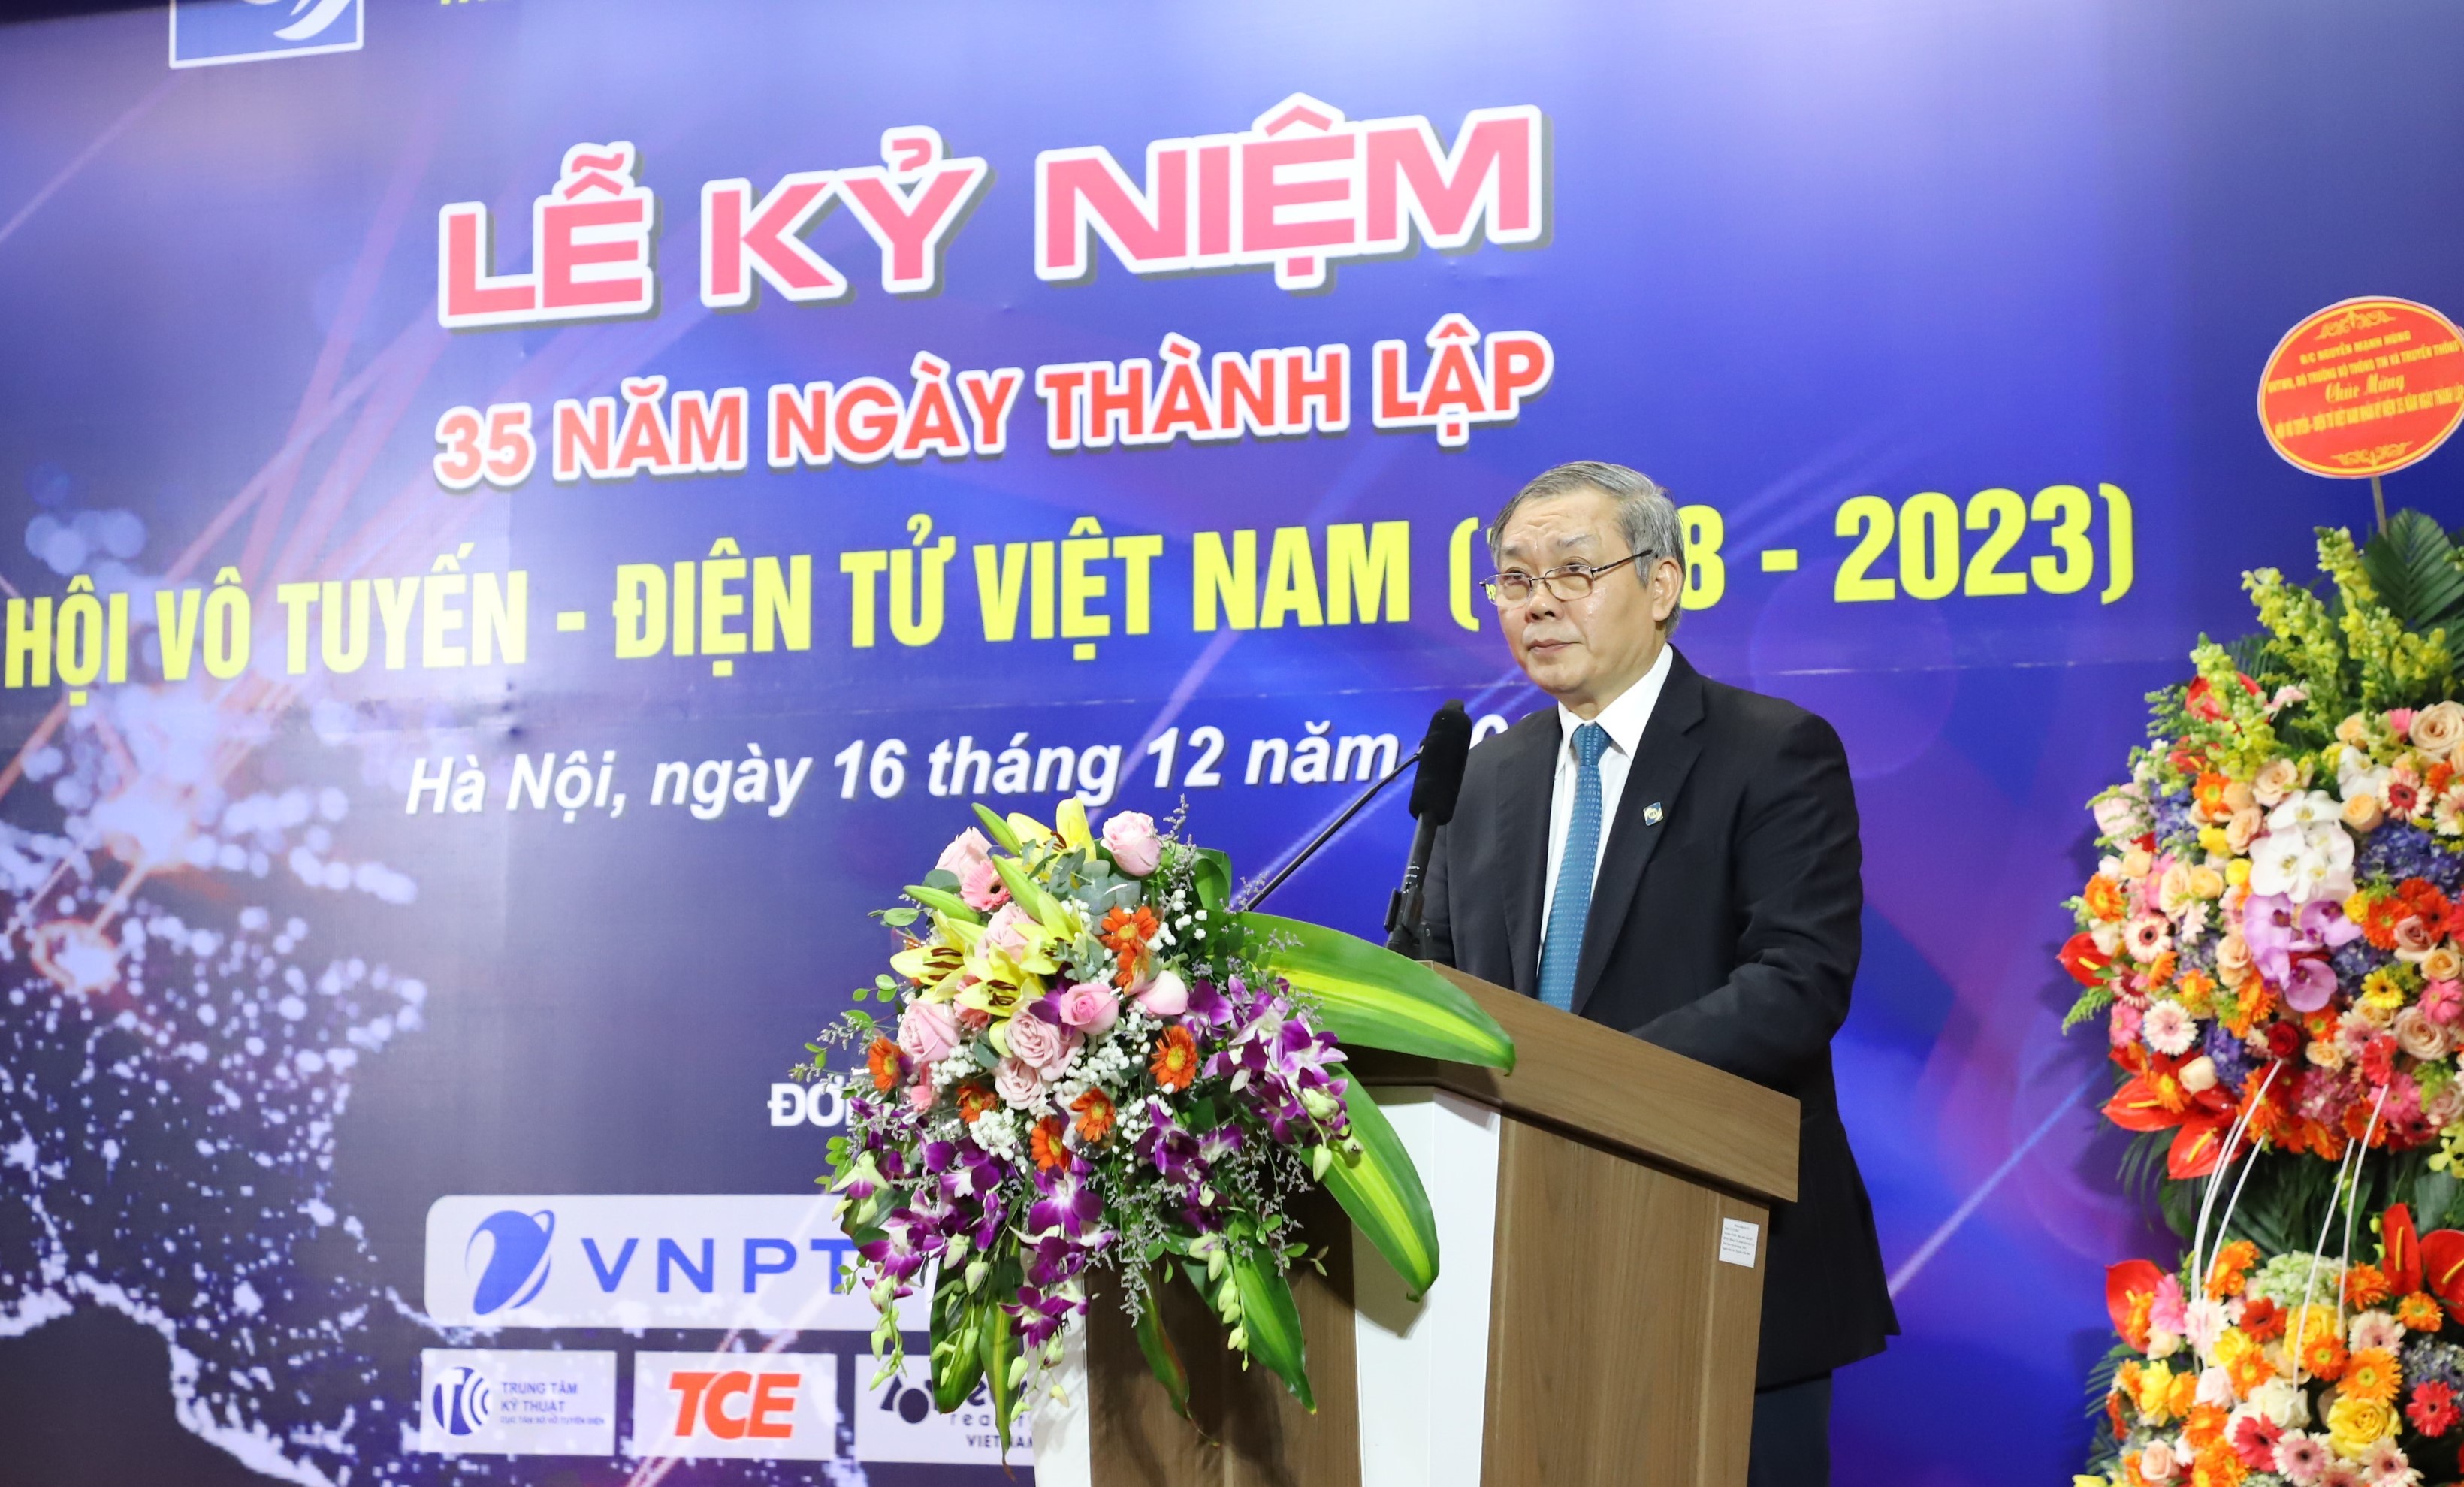 Tích cực góp phần phát triển nền công nghiệp Điện tử - Viễn thông mang thương hiệu Việt Nam